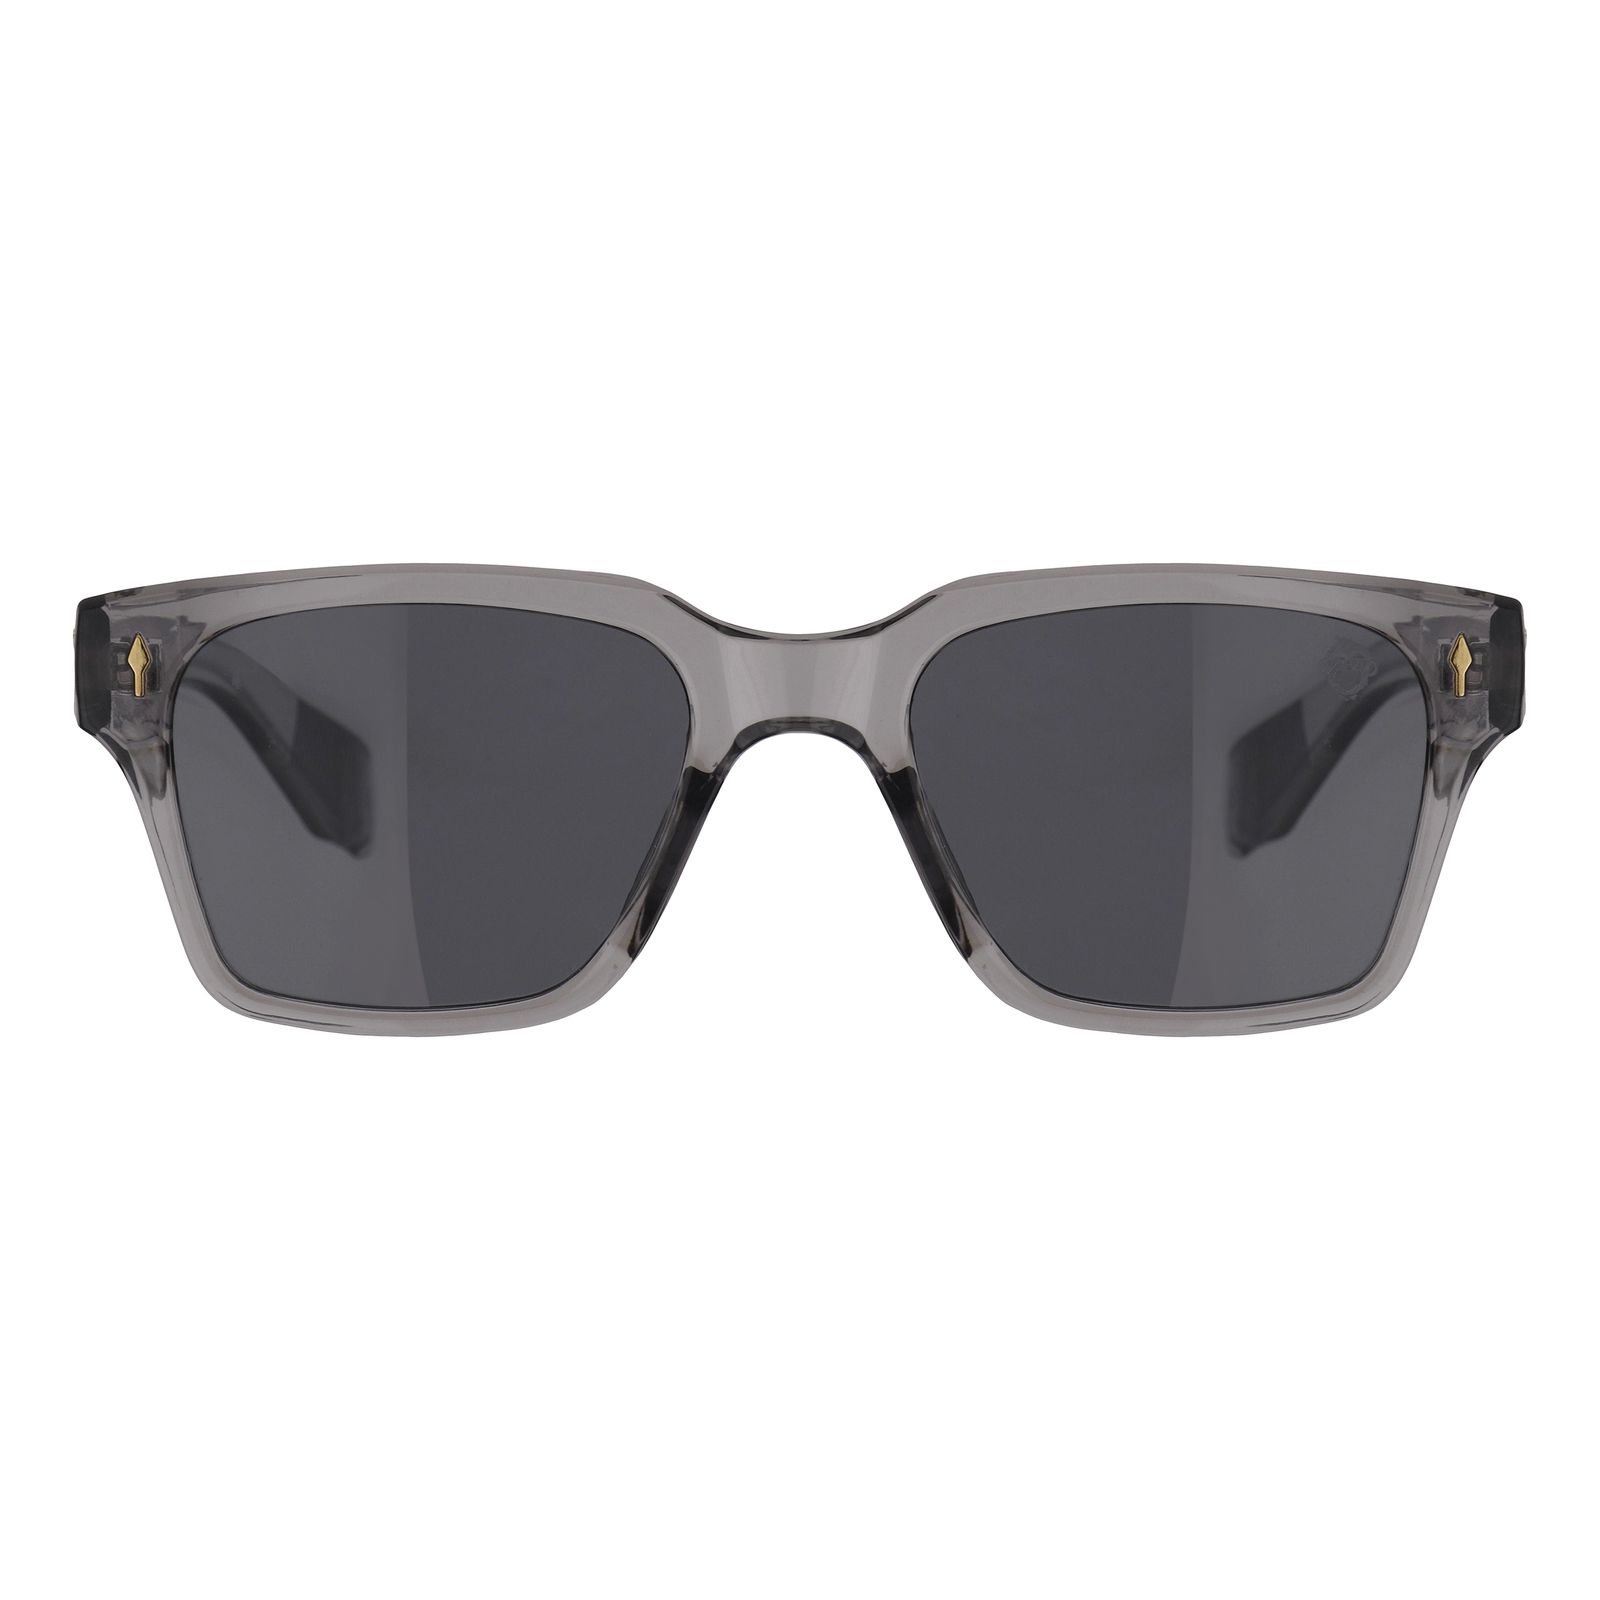 عینک آفتابی مستر مانکی مدل 6012 gr -  - 1